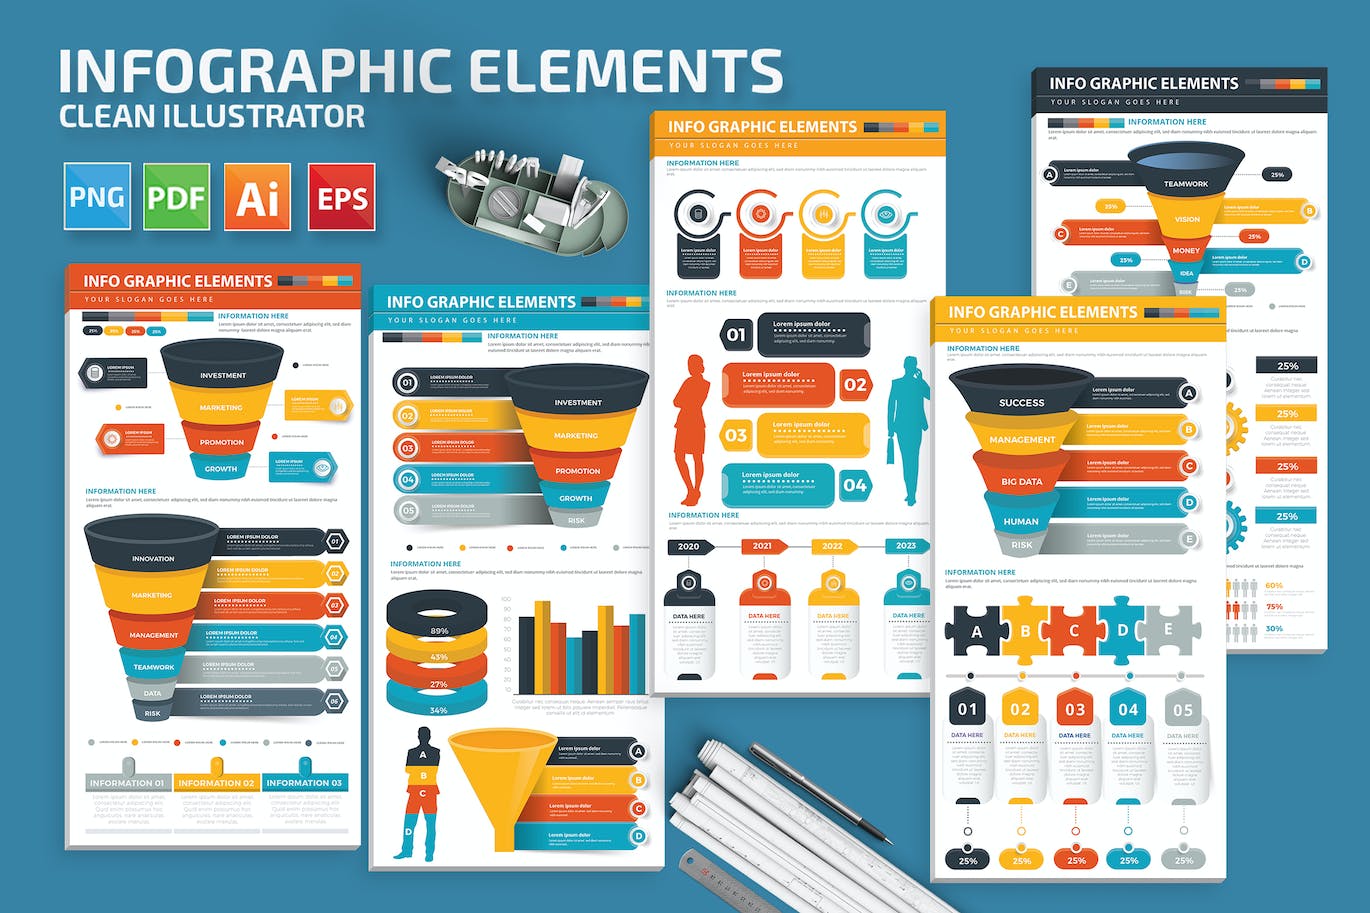 数据步骤信息图表元素模板 Infographic Elements 幻灯图表 第1张